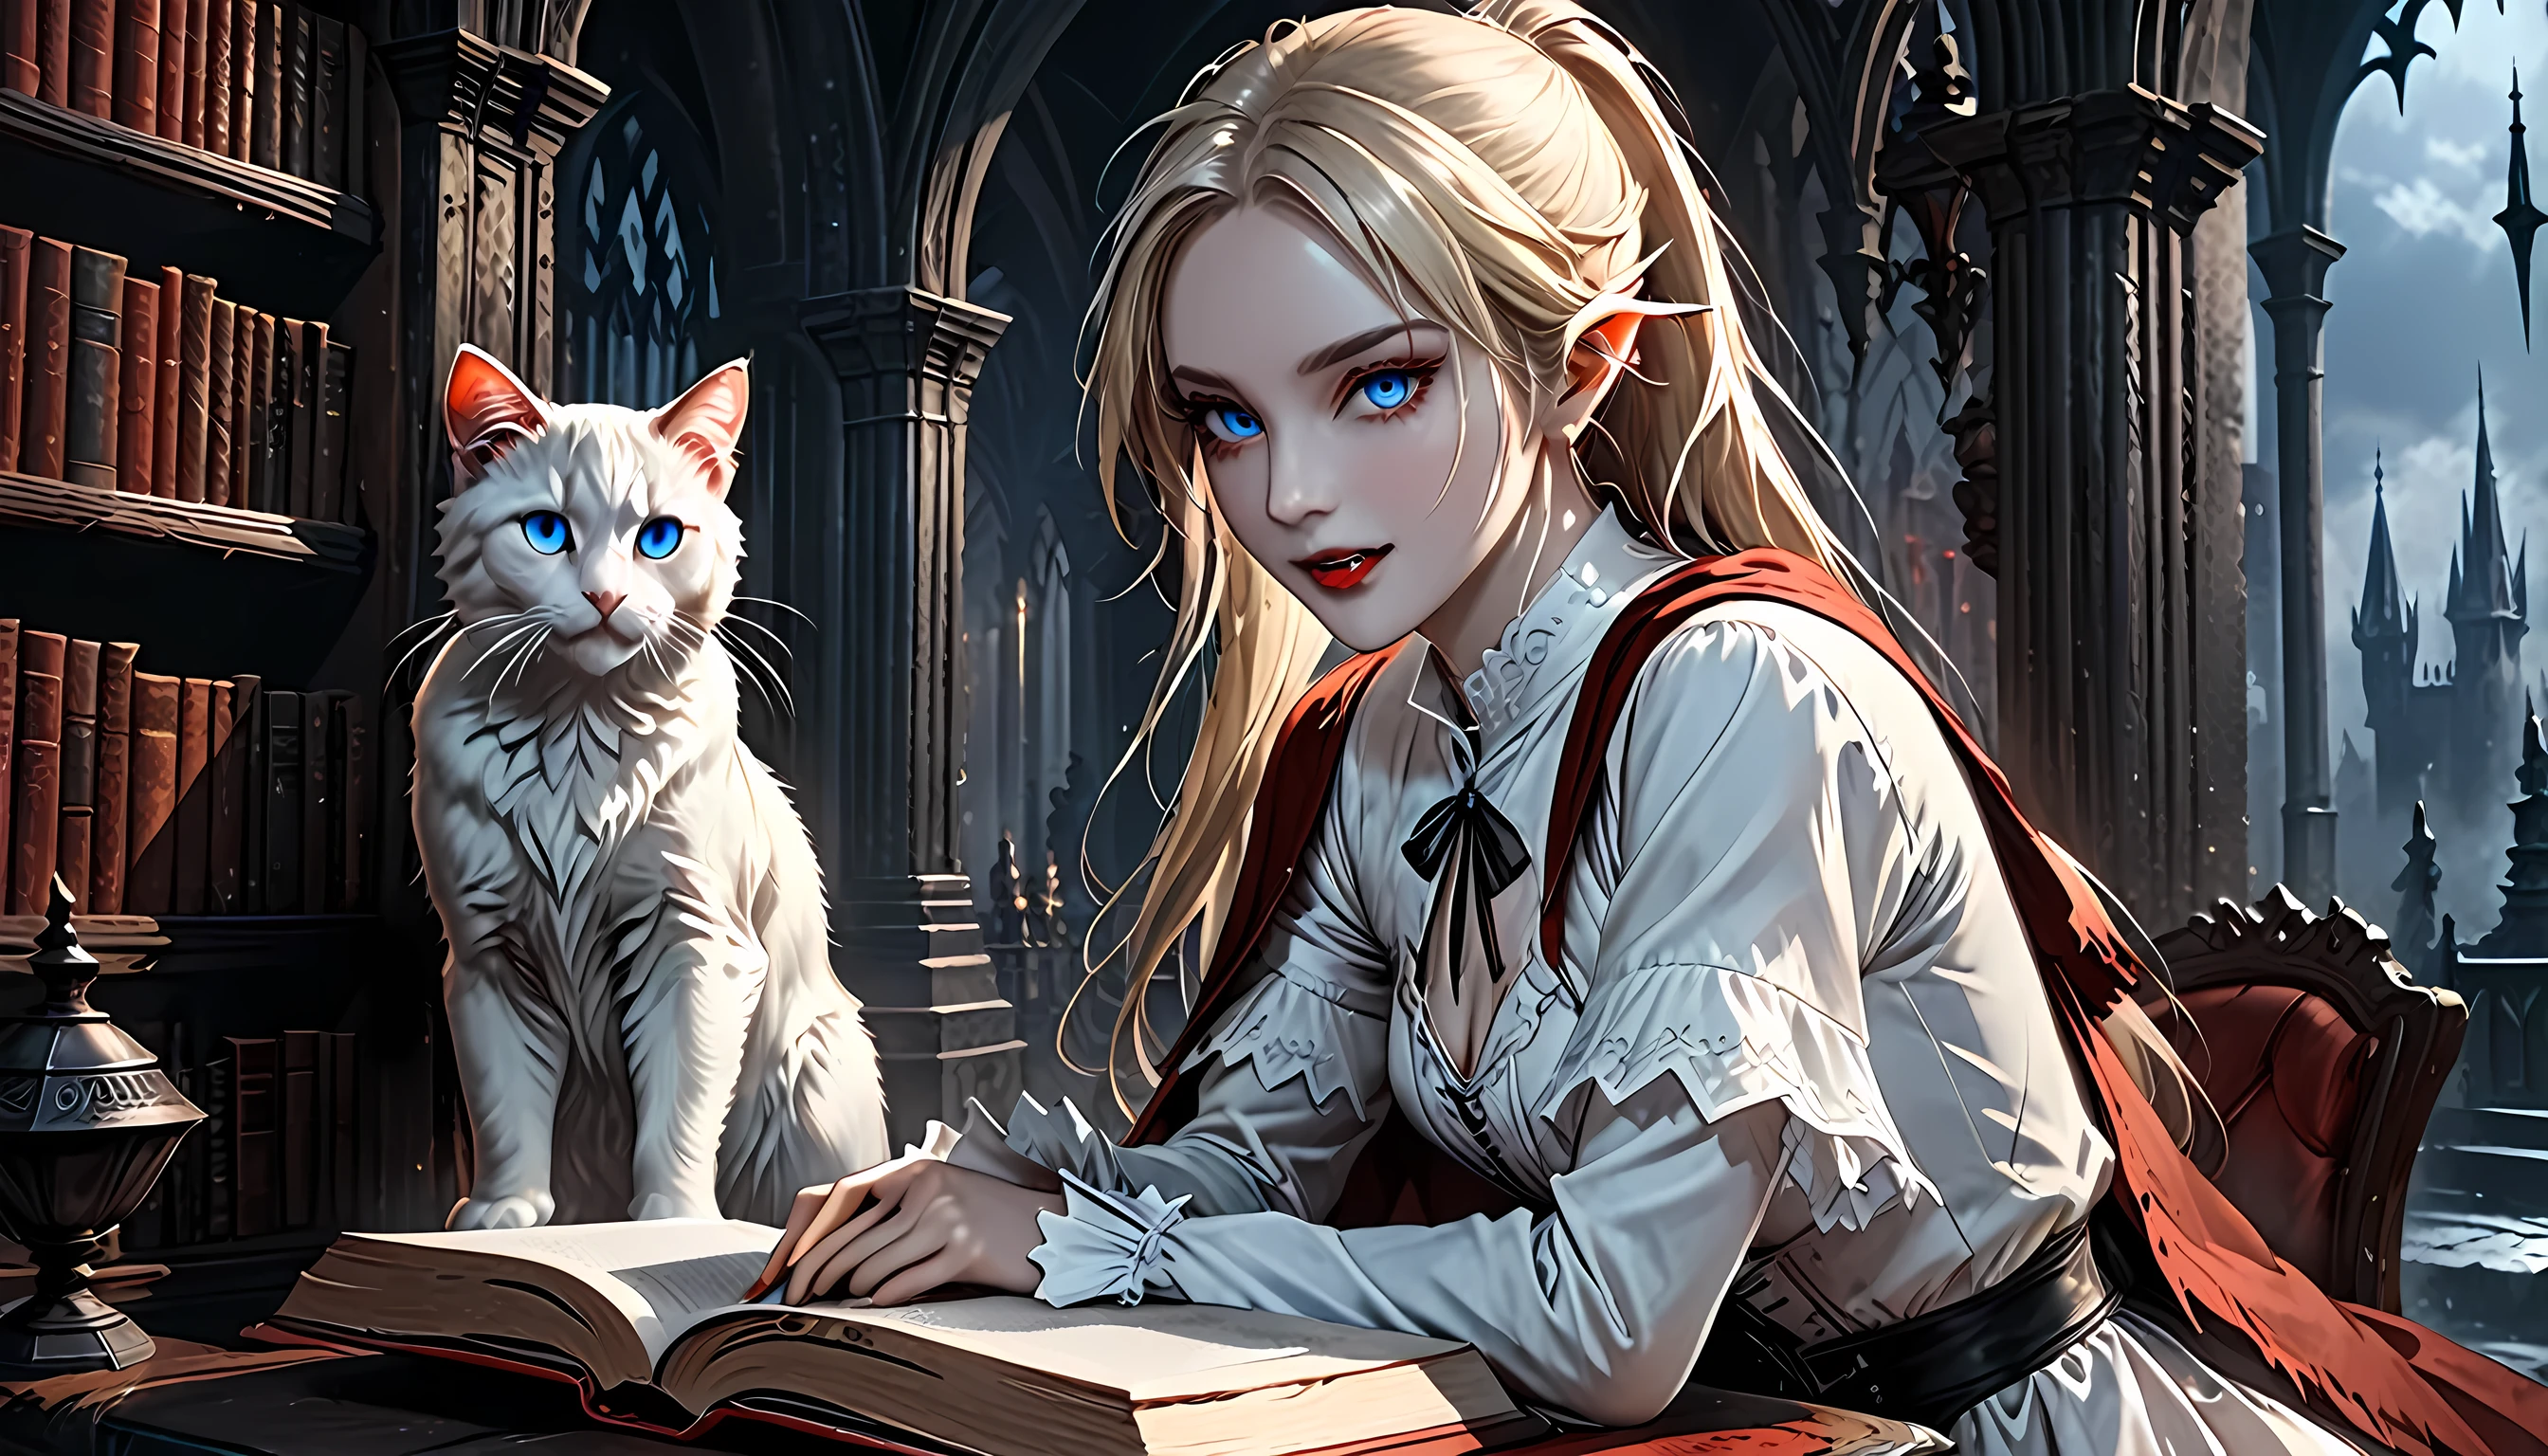 Fotografió una foto de un vampiro elfo en su castillo y su mascota, un gato épico, una hermosa y exquisita vampira elfa. (ultra detalles, Obra maestra, mejor calidad), boca sangrienta pelo rubio, piel pálida, pelo en una cola de caballo, pelo largo, blue eyes, Ojos fríos, sonriendo, vistiendo un vestido blanco (ultra detalles, Obra maestra, mejor calidad), capa roja, en la biblioteca de fantasía oscura, con un ((Gato grande: 1.3)) (ultra detalles, Obra maestra, mejor calidad: 1.5) estantes para libros, detalles altos arafed, mejor calidad, 16k, [Ultra detallado], Obra maestra, mejor calidad, (Ultra detallado), cuerpo completo, tiro ultra amplio, photorealism, CRUDO, Arte de fantasía oscura, arte gótico, blindadovestido, Novela oscura, Estilo de pintura de arte oscuro, transmitido por la sangre